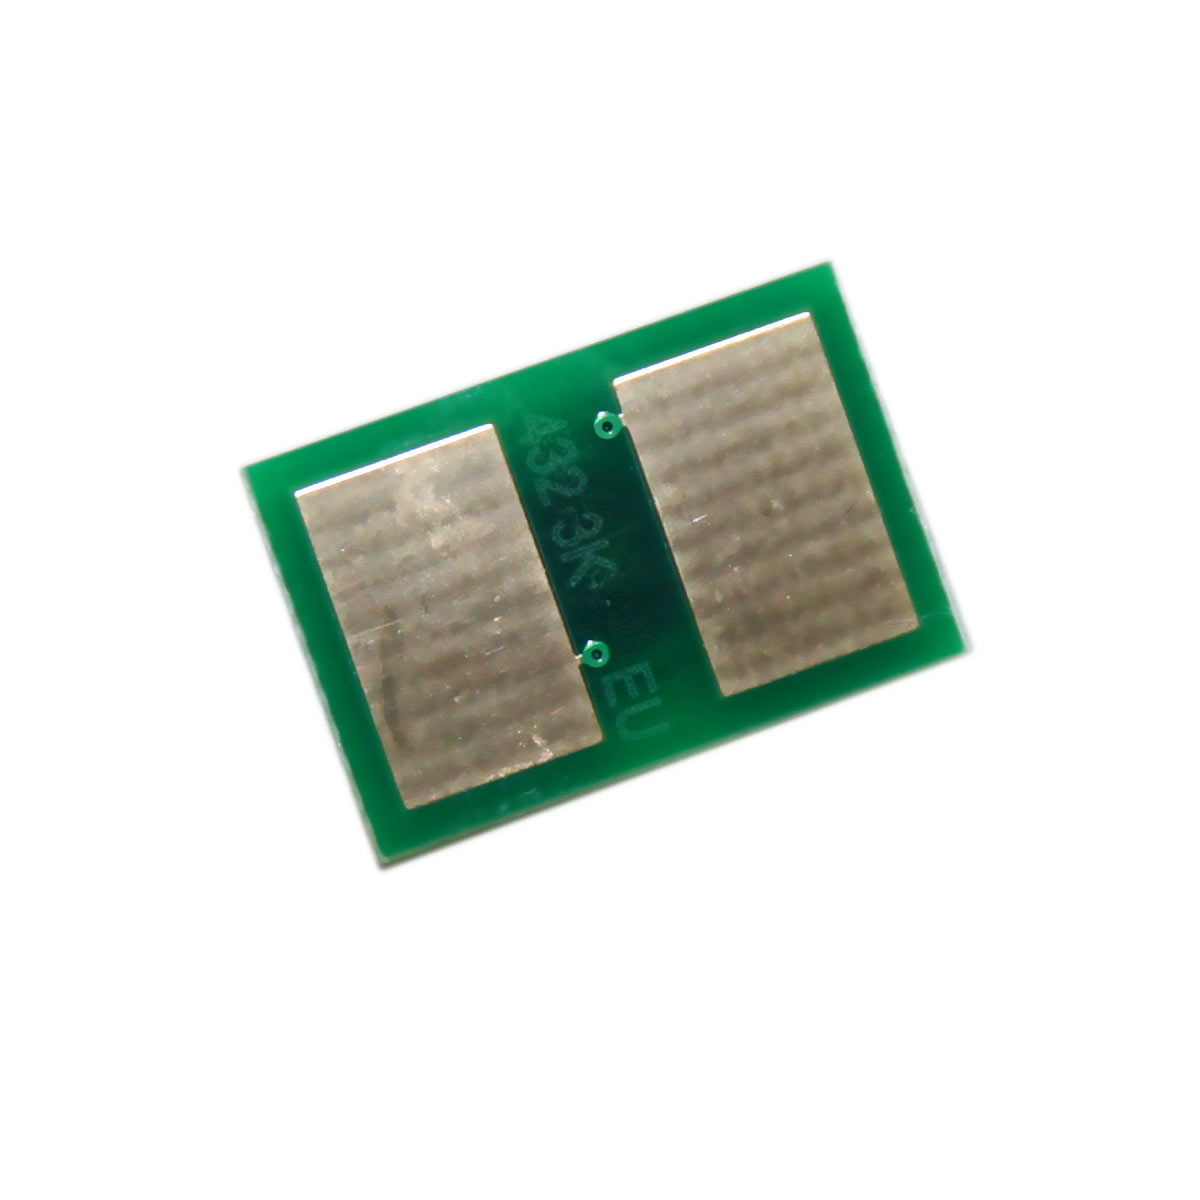 Chip zliczający OKI MB 492